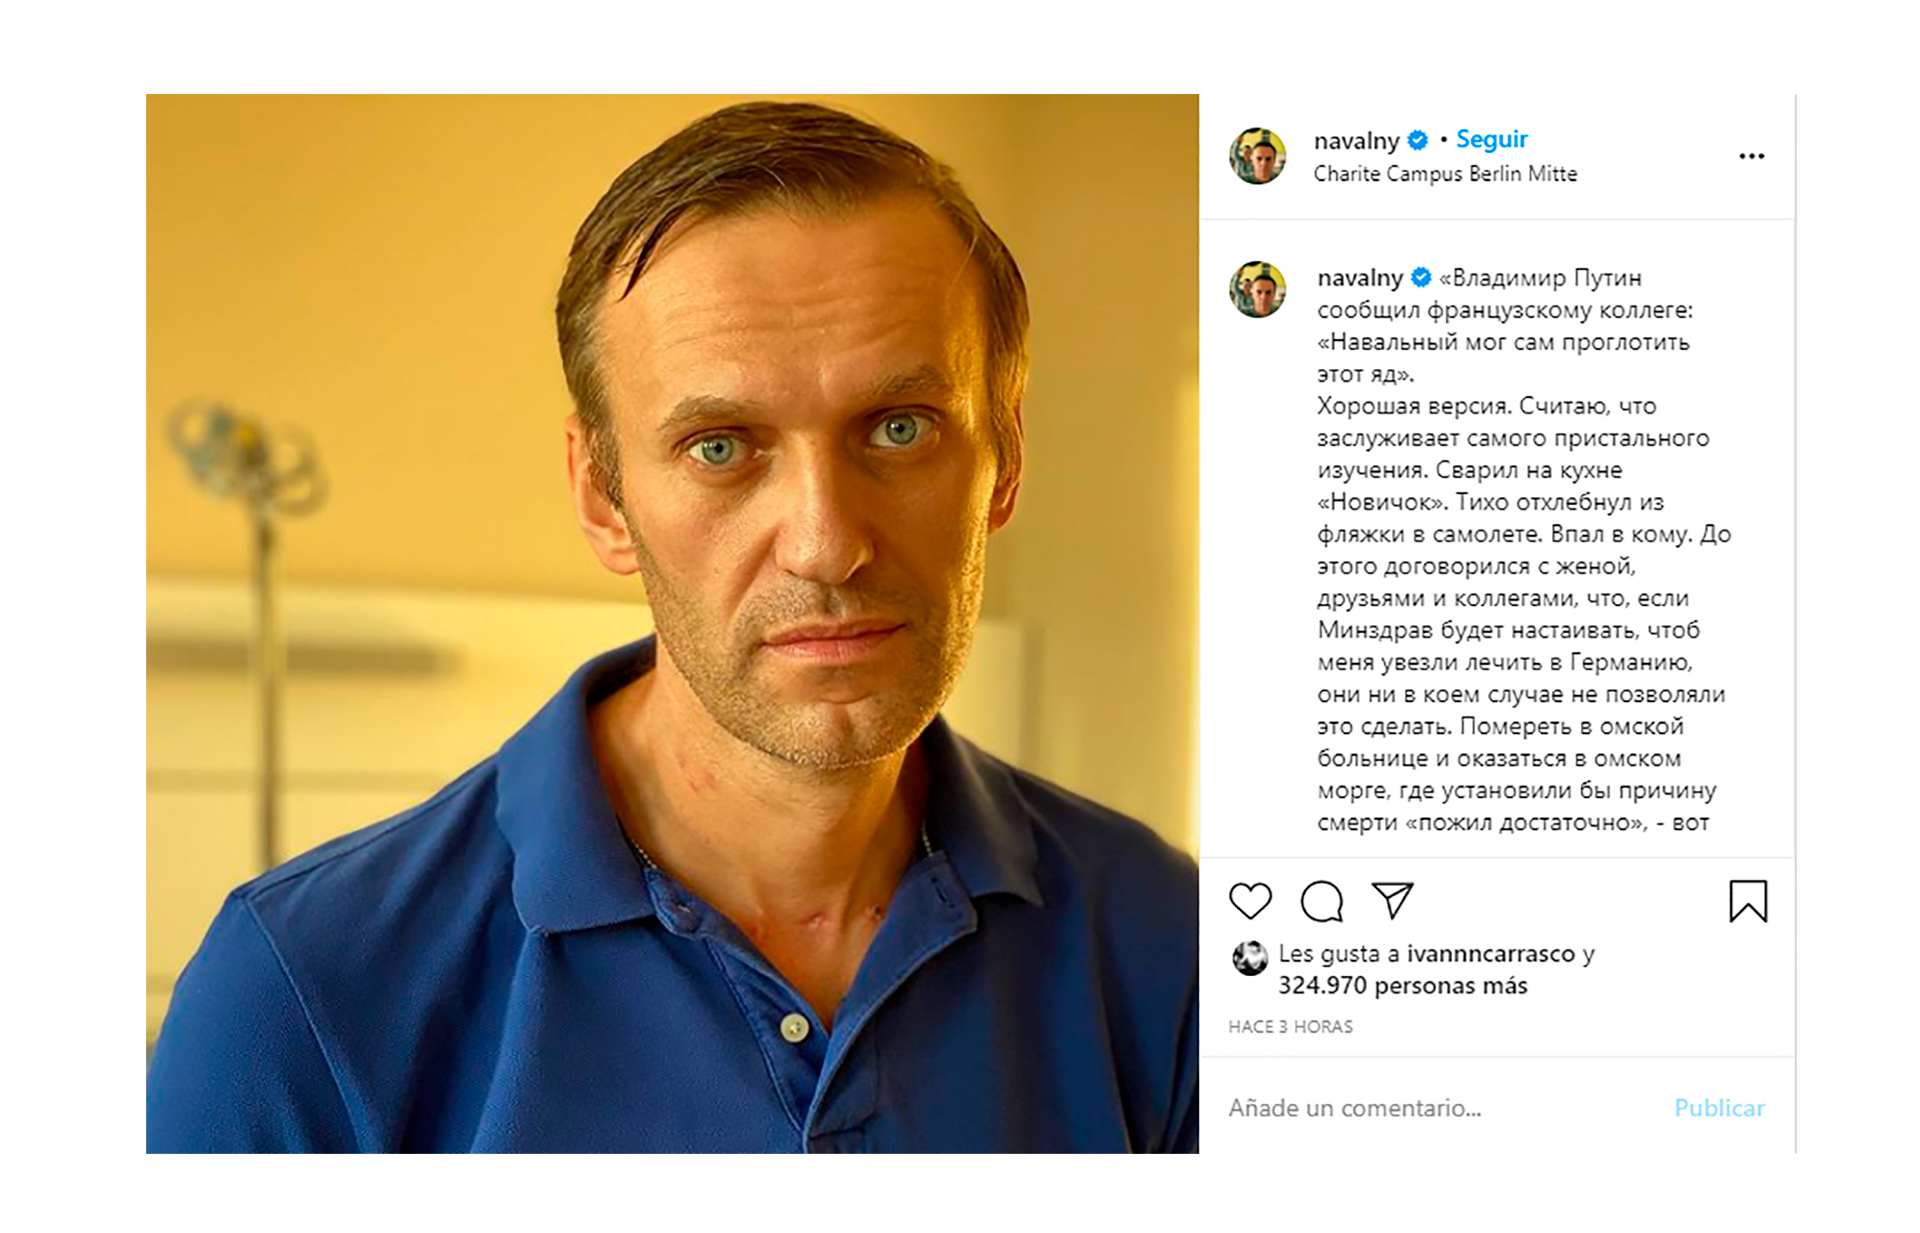 El posteo del opositor ruso, Alexei Navalny, en el que responde al presidente Vladimir Putin